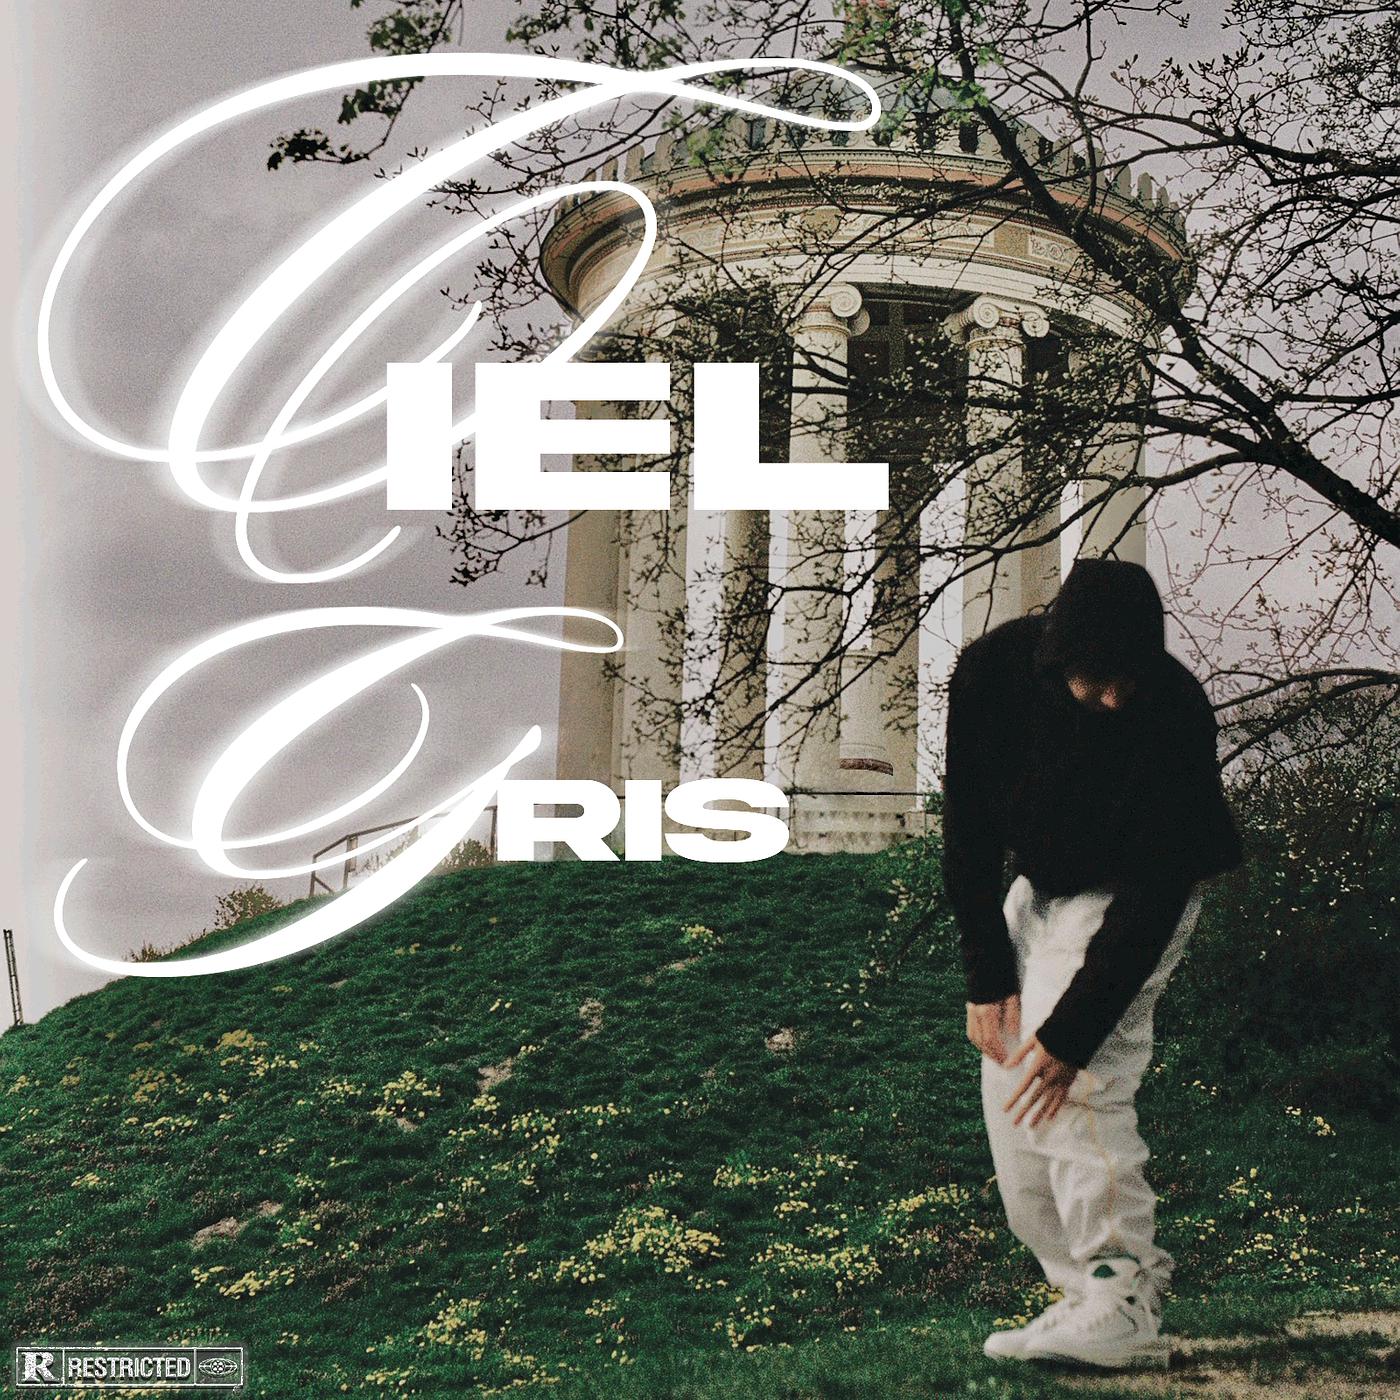 Постер альбома Ciel Gris